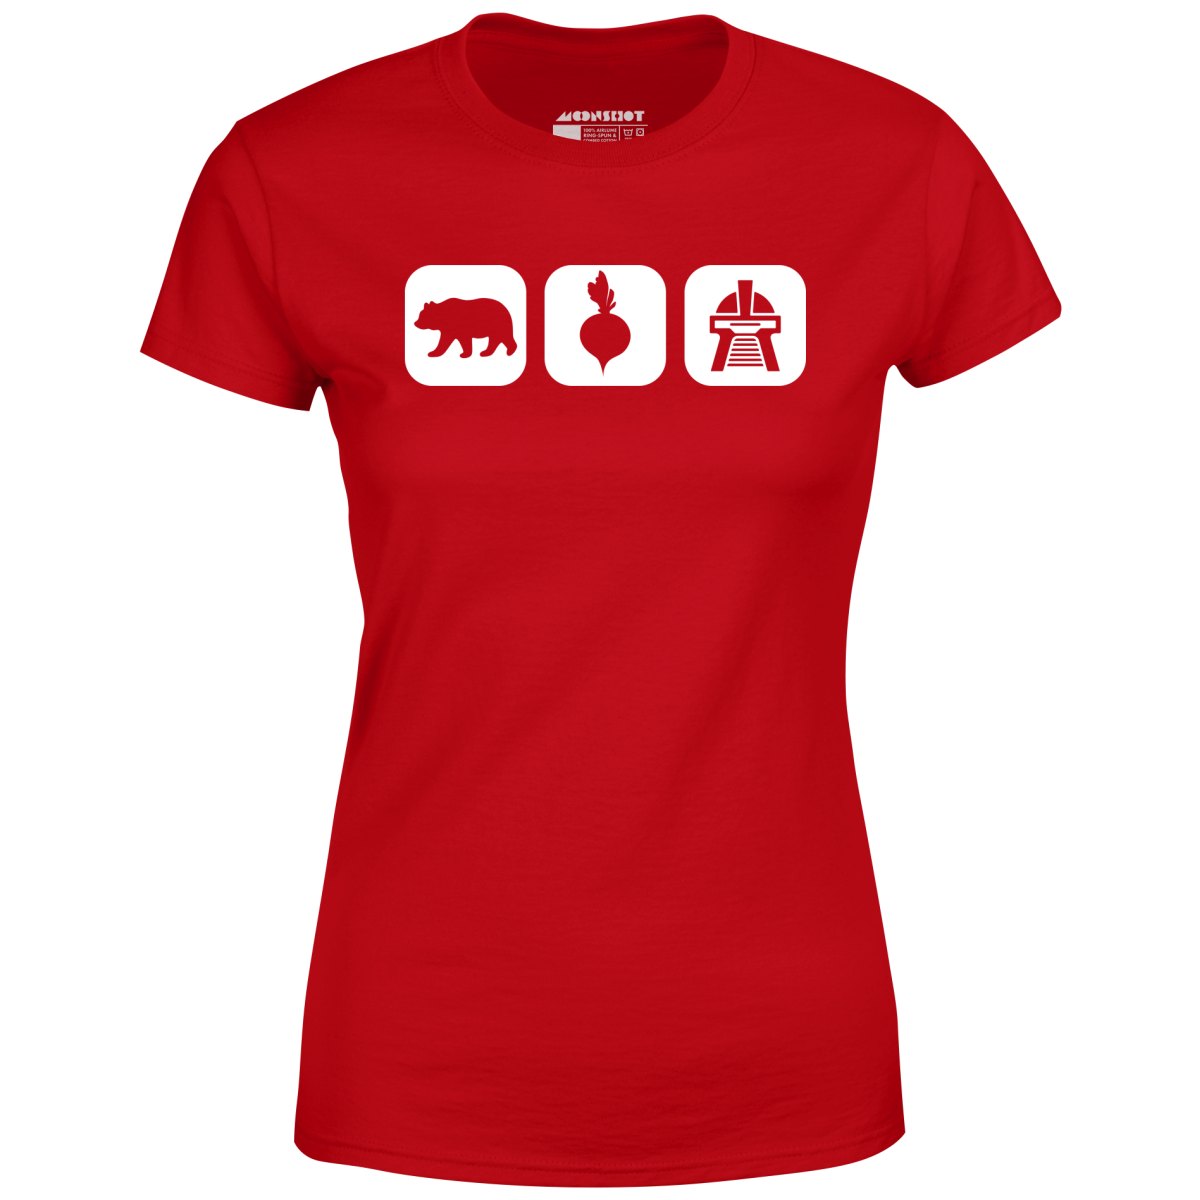 Bears Beets Battlestar Galactica v2 - Women's T-Shirt